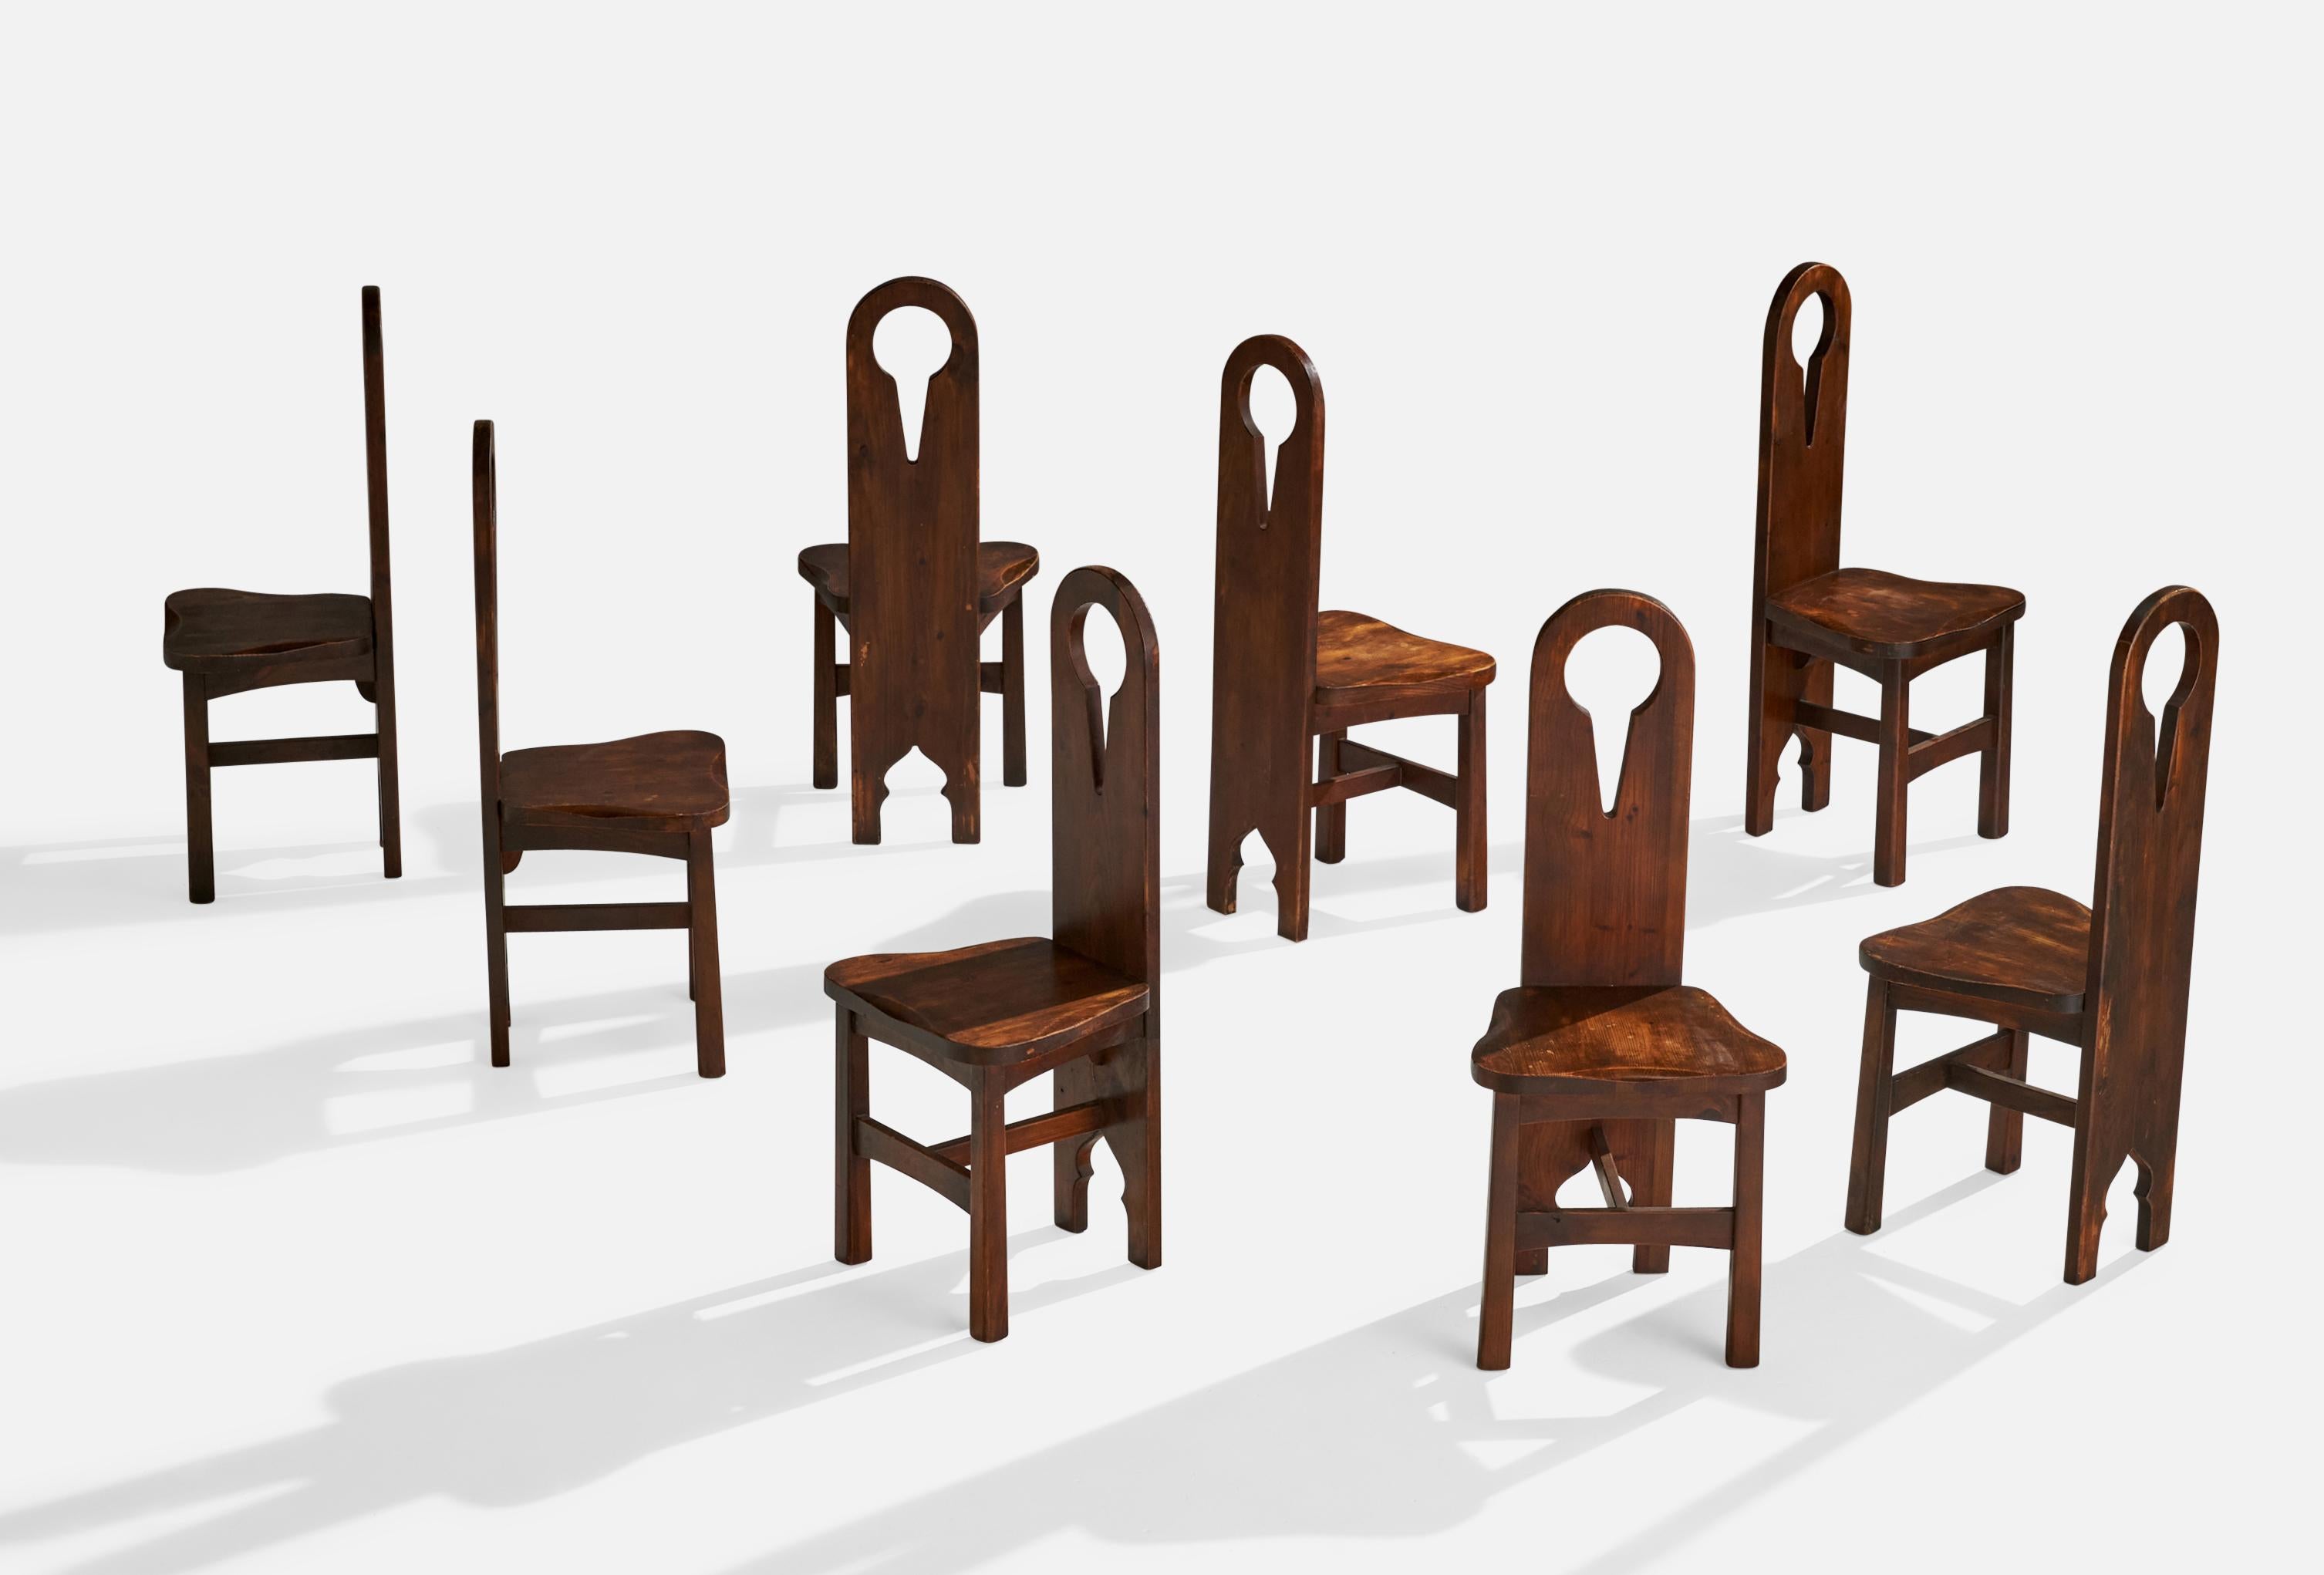 8 Esszimmerstühle aus gebeiztem Kiefernholz, entworfen und hergestellt in den USA, um 1910.

Sitzhöhe 17.75